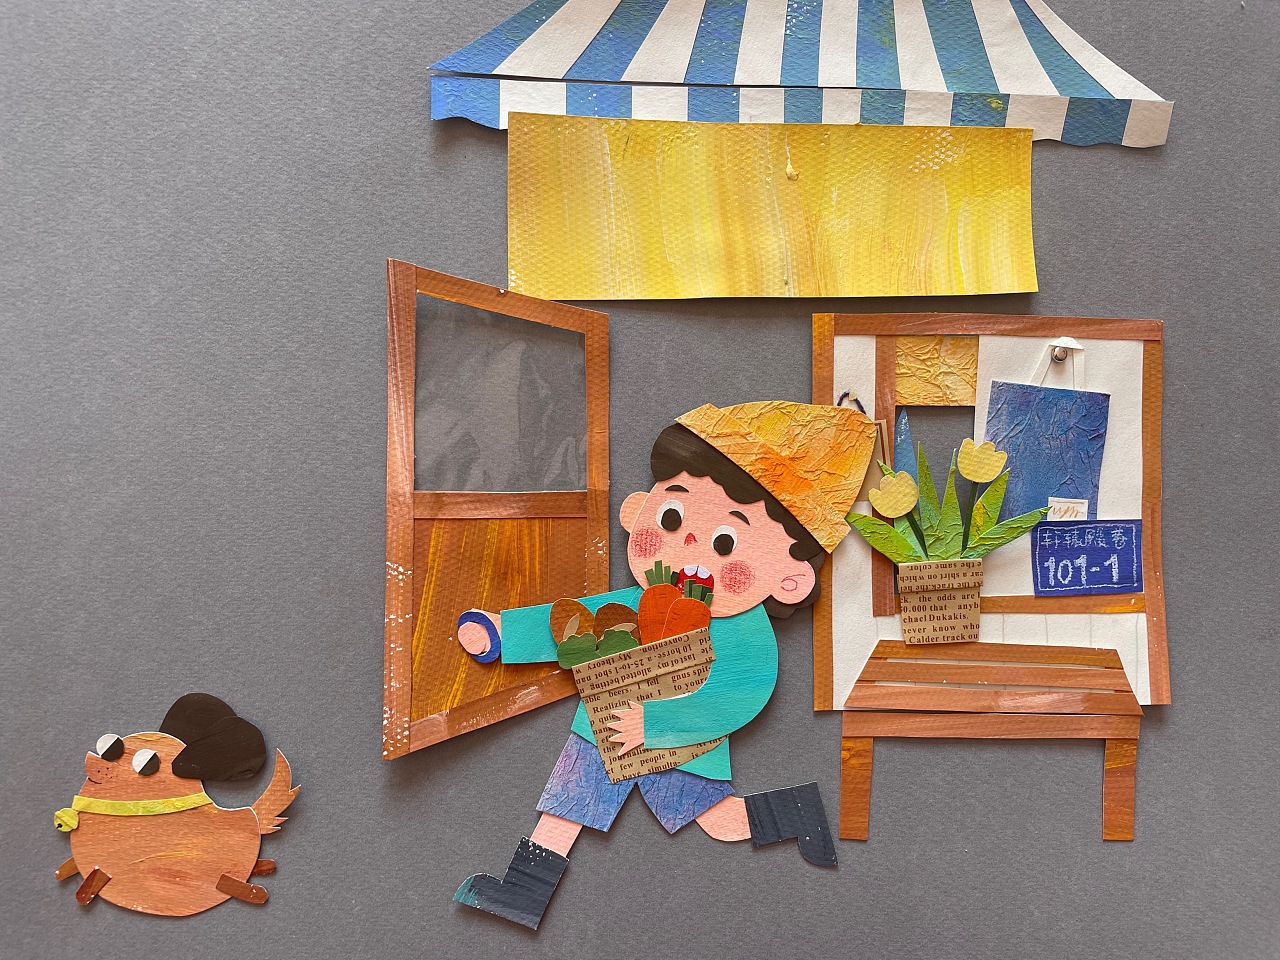 糖纸黏贴画真漂亮 - 班级新闻 - 杭州市德胜幼儿园